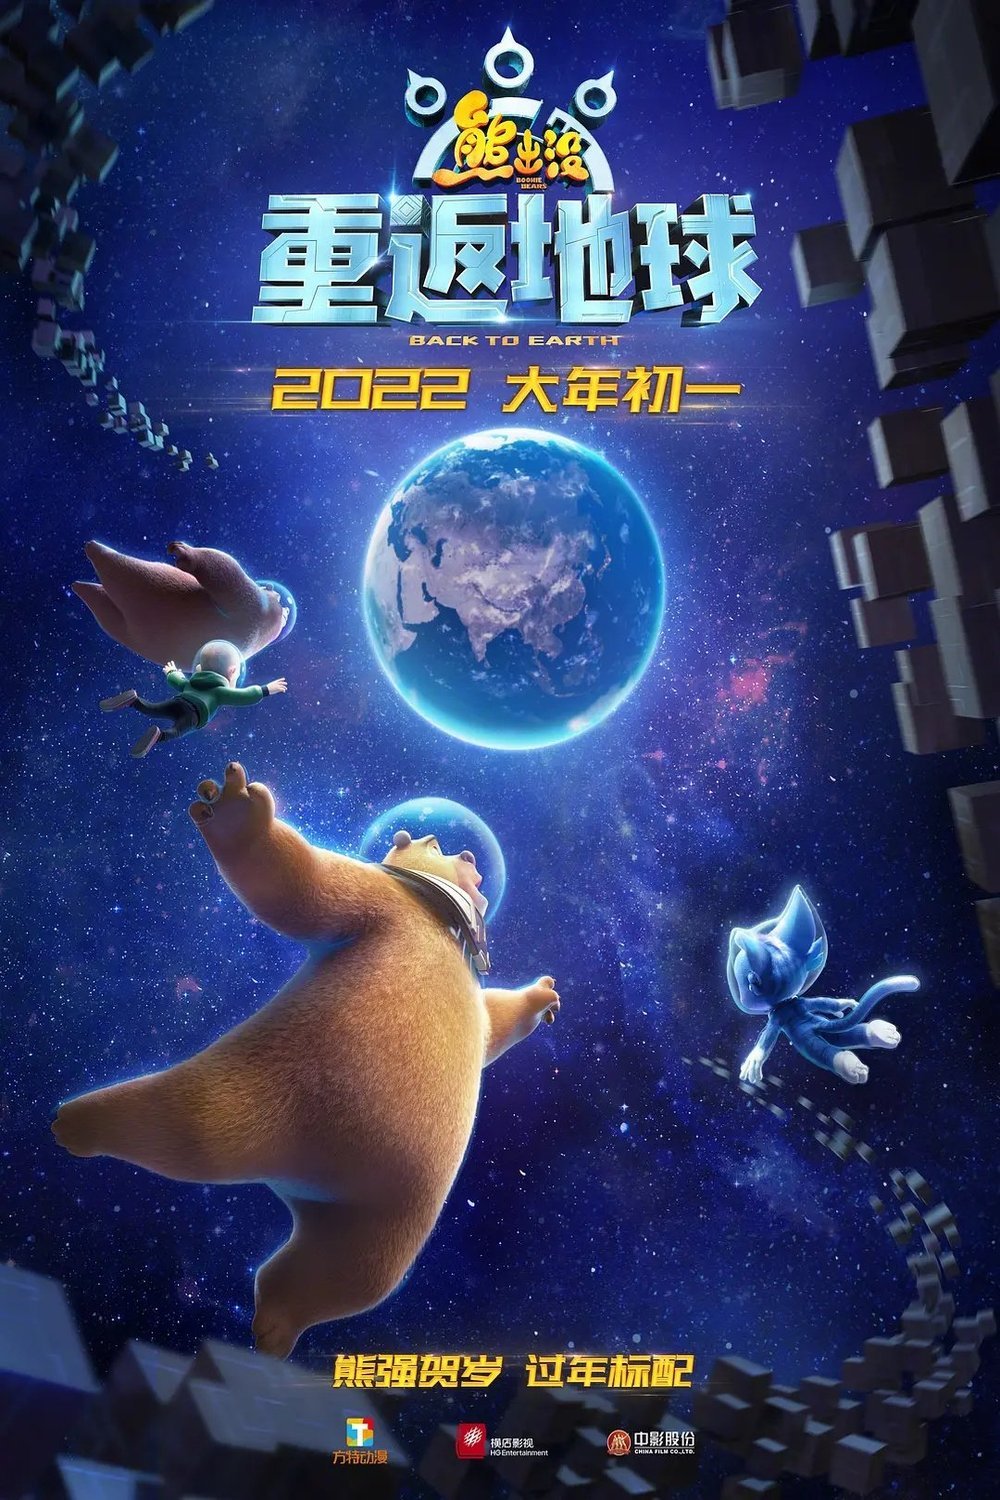 L'affiche originale du film Les Ours Boonie: Retour sur terre en mandarin